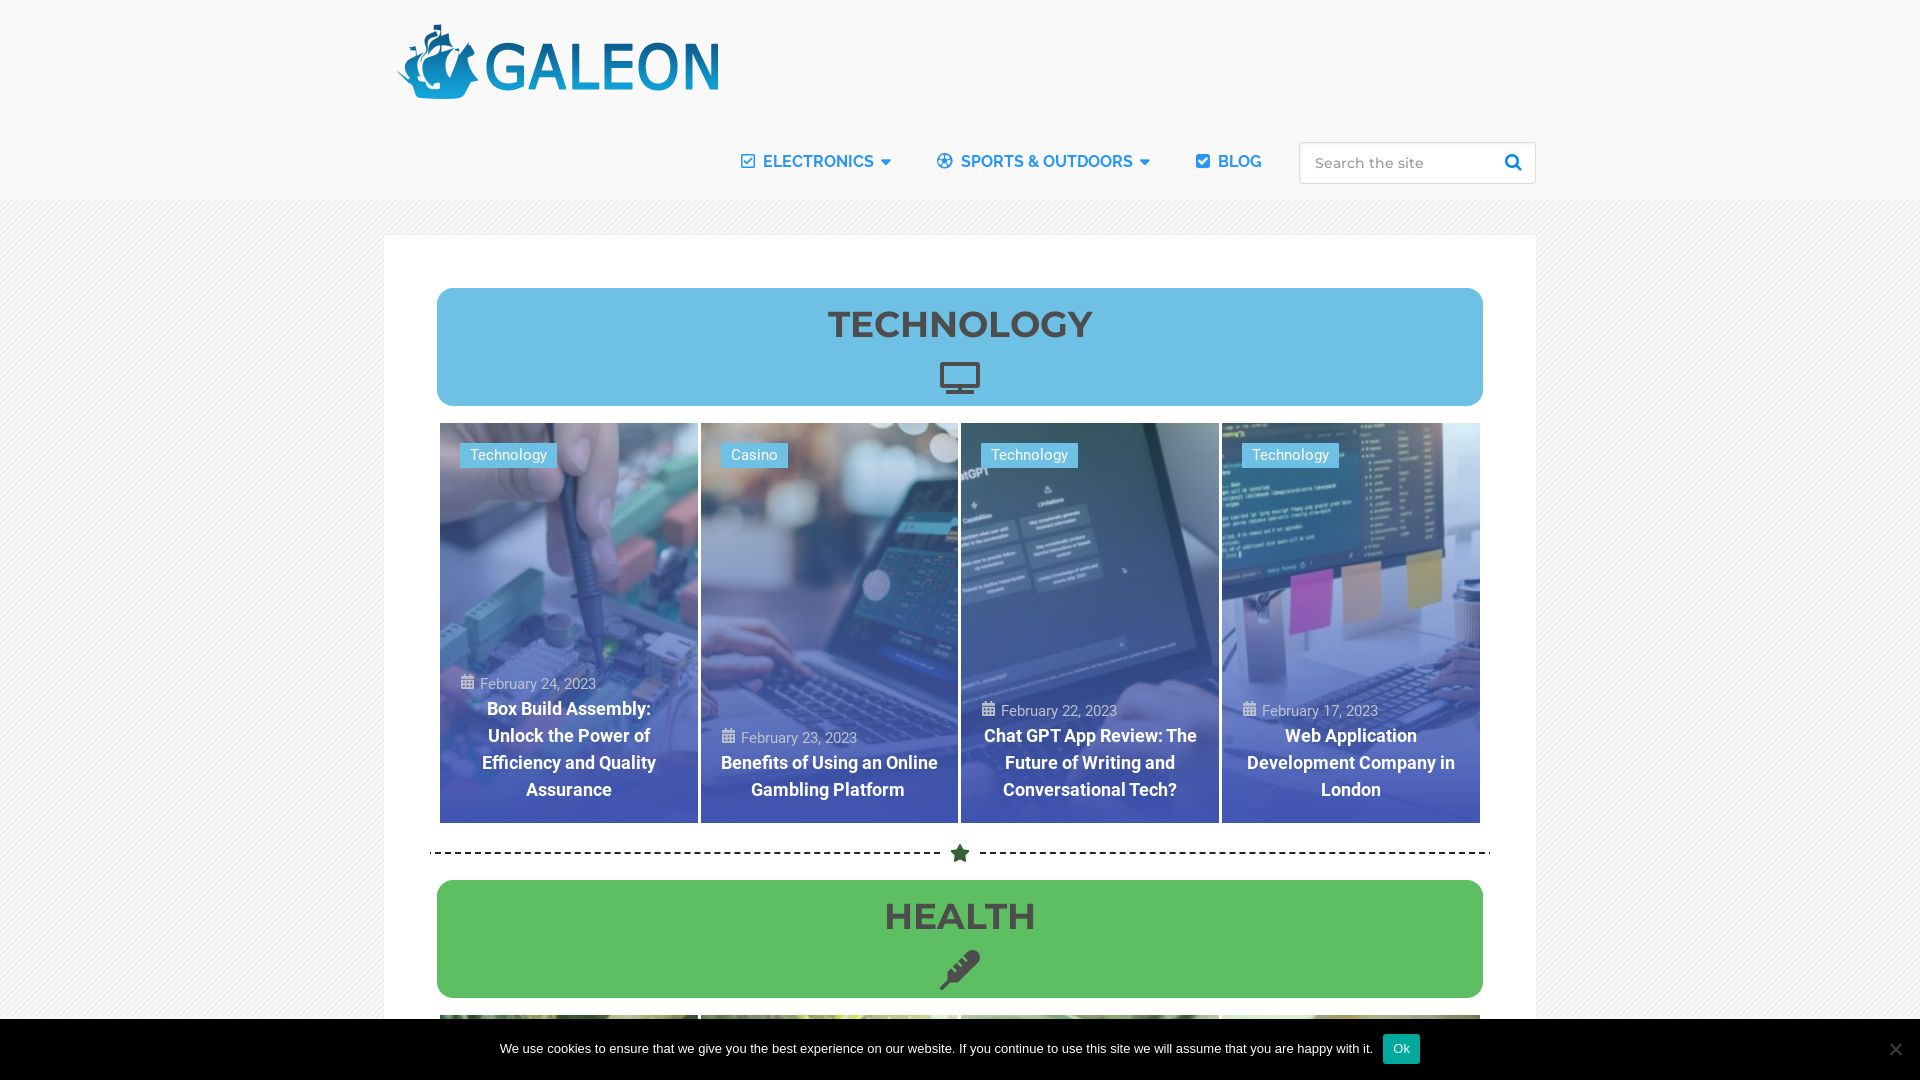 État du site web galeon.com est   EN LIGNE